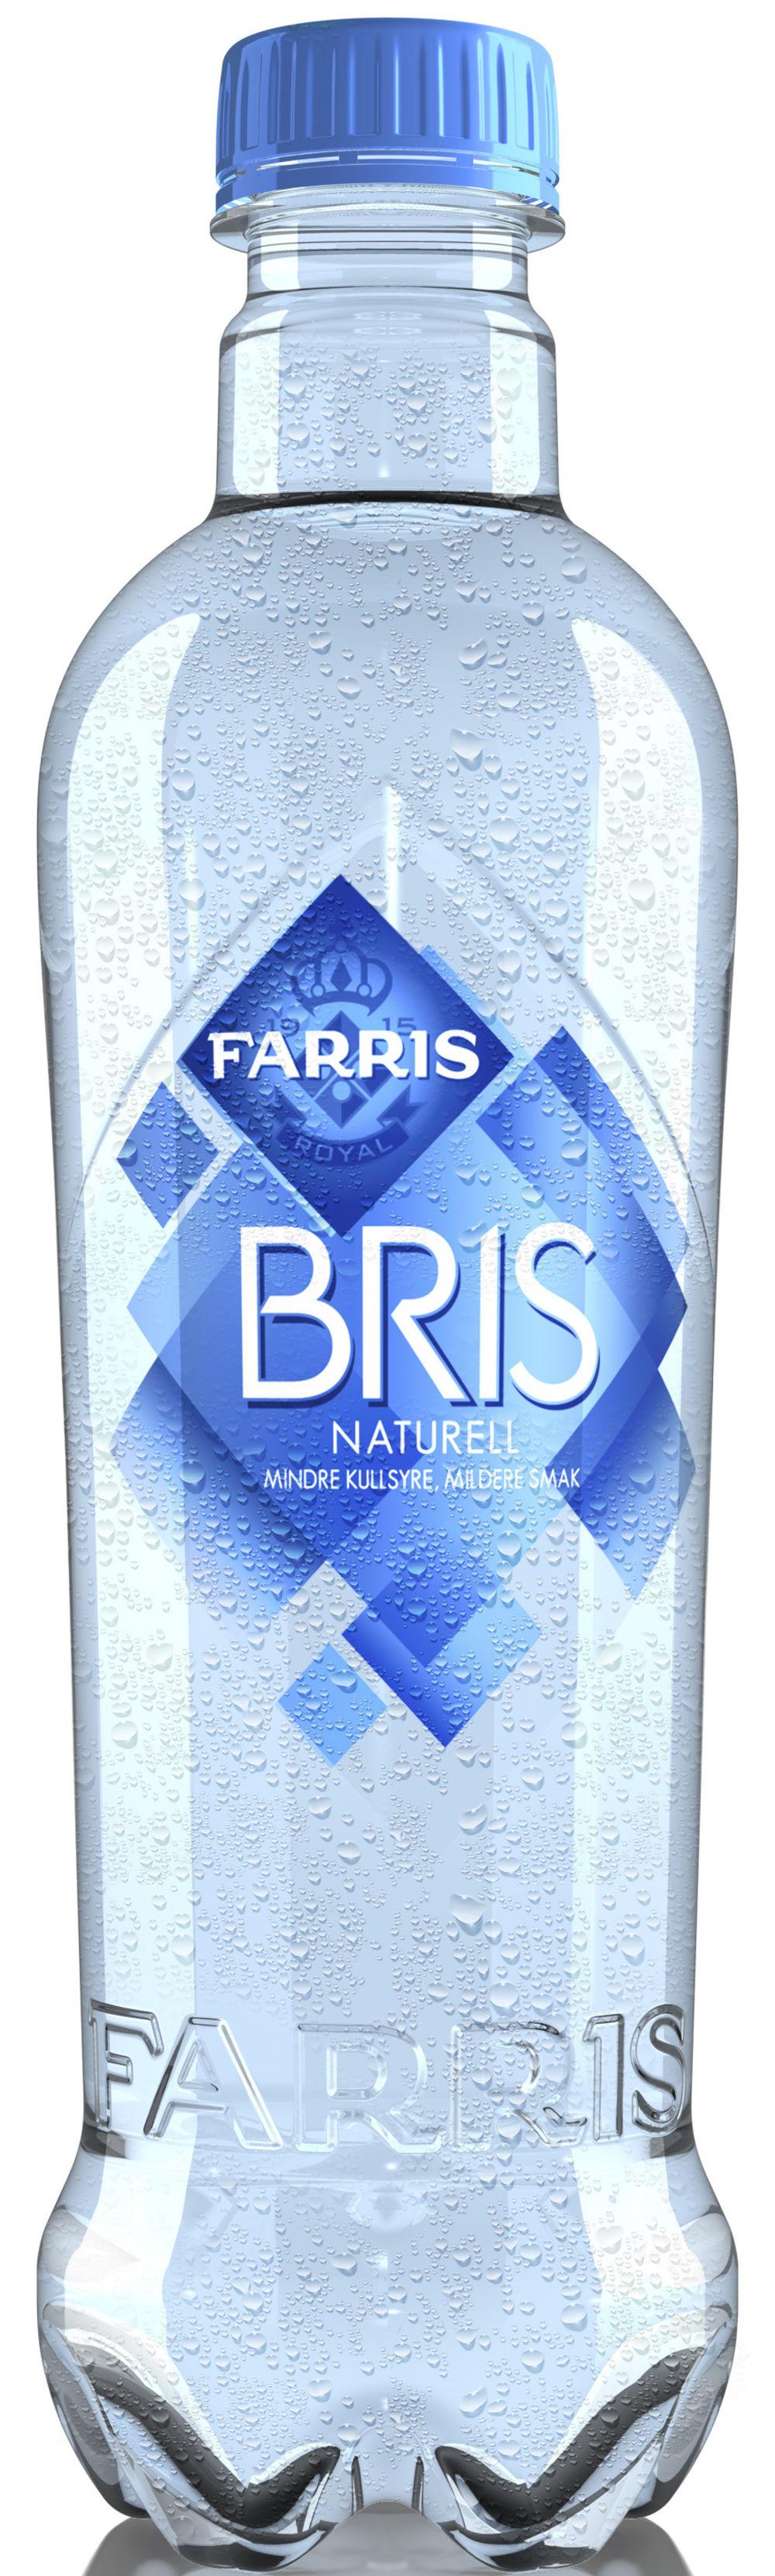 Farris Bris Naturell 0,5 l - inkl. pant